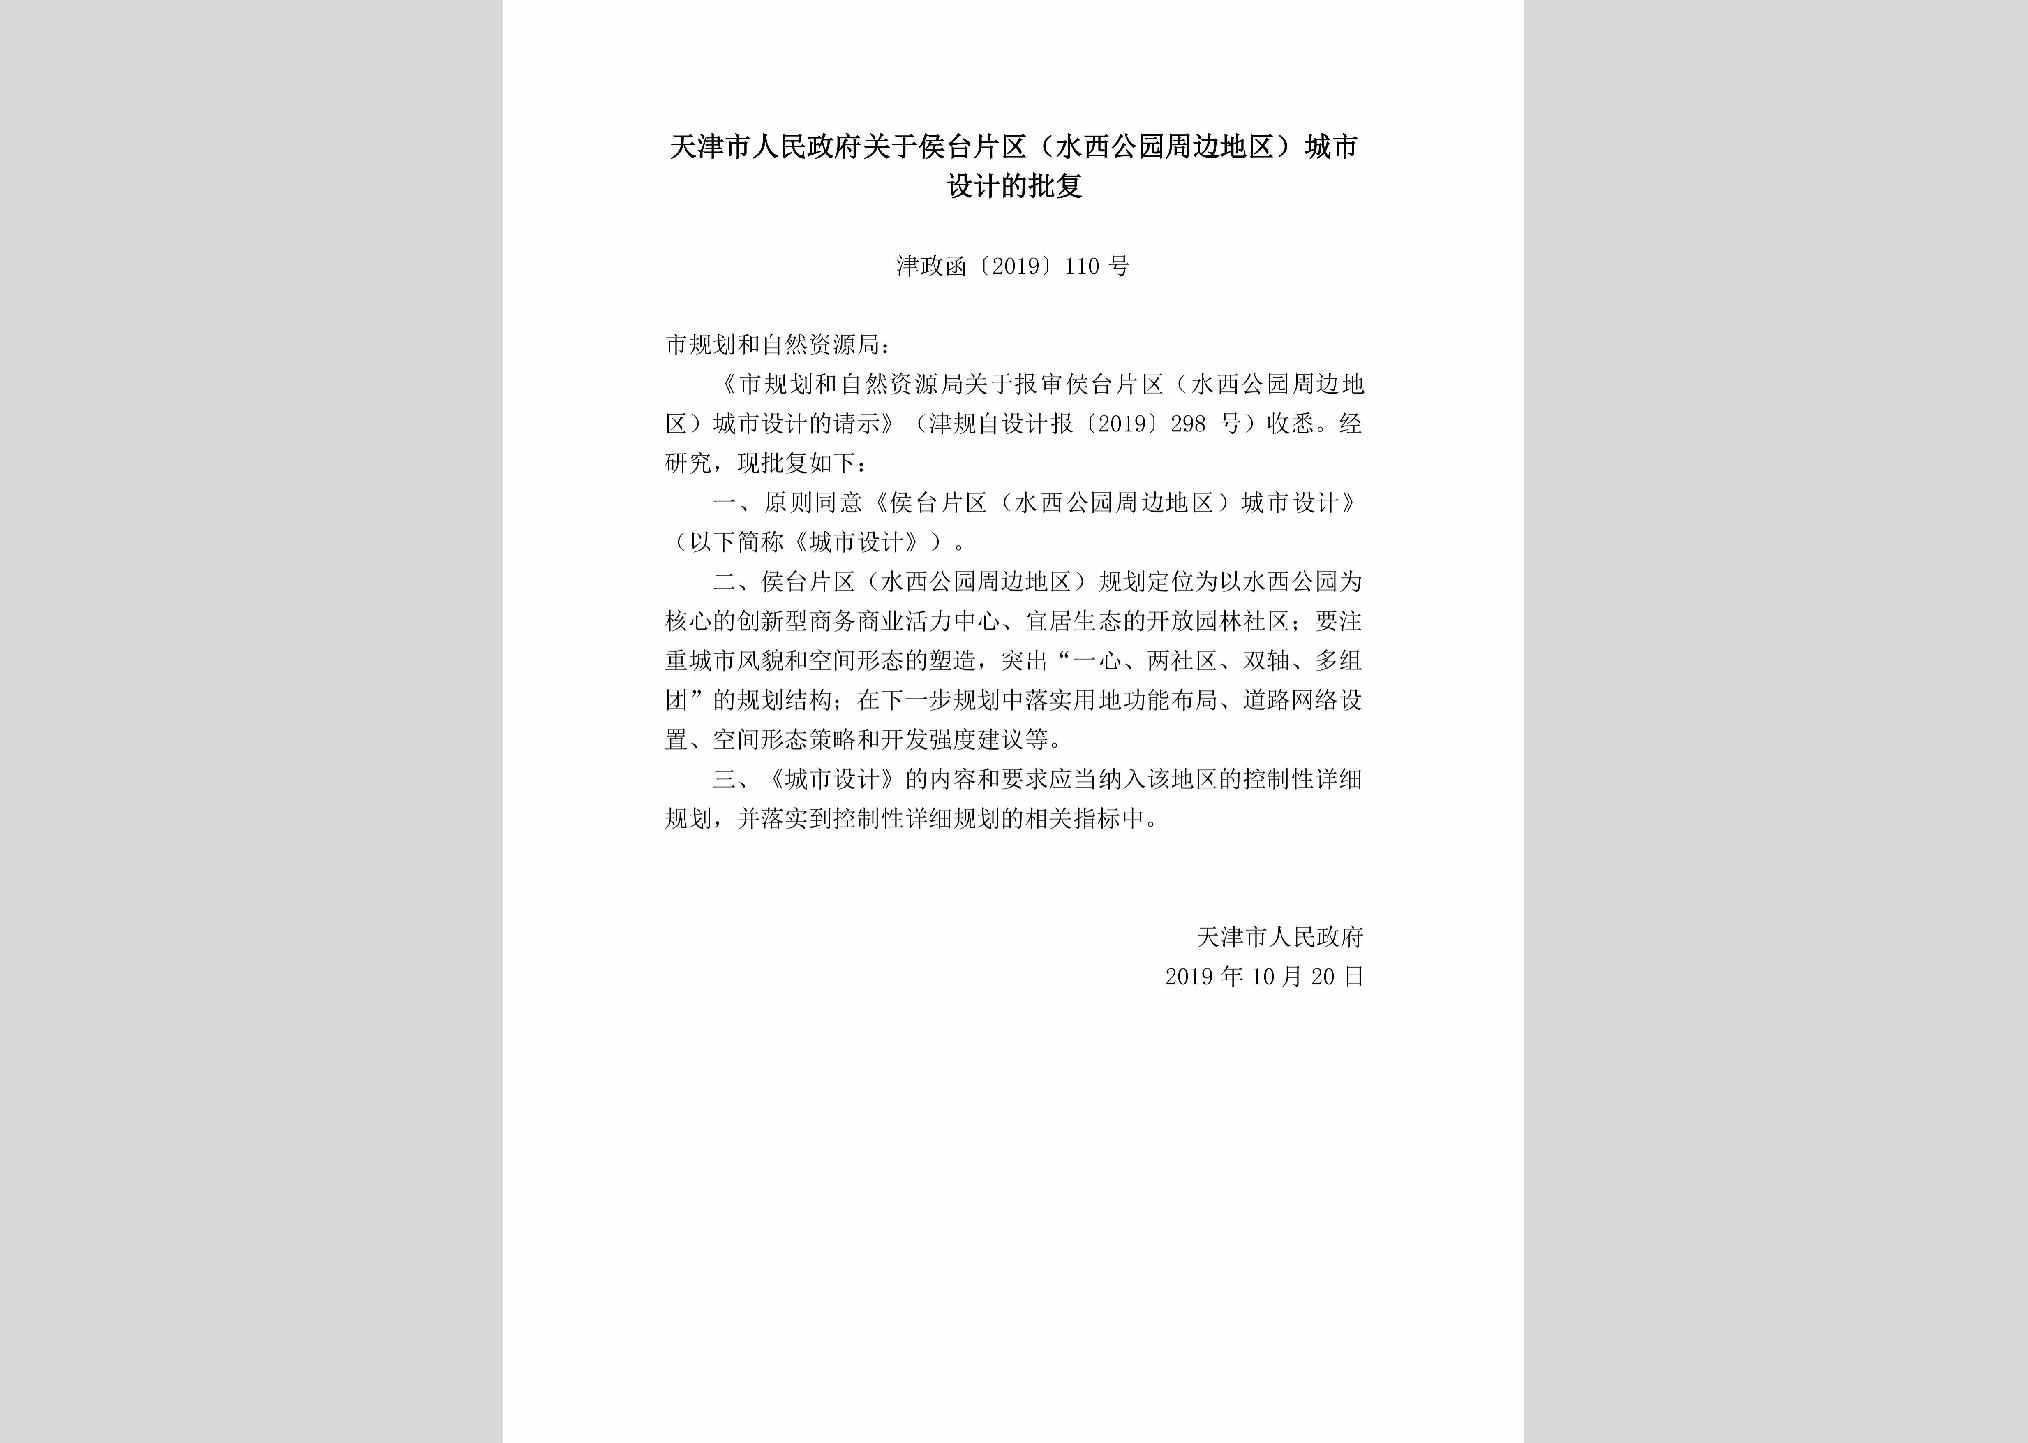 津政函[2019]110号：天津市人民政府关于侯台片区（水西公园周边地区）城市设计的批复